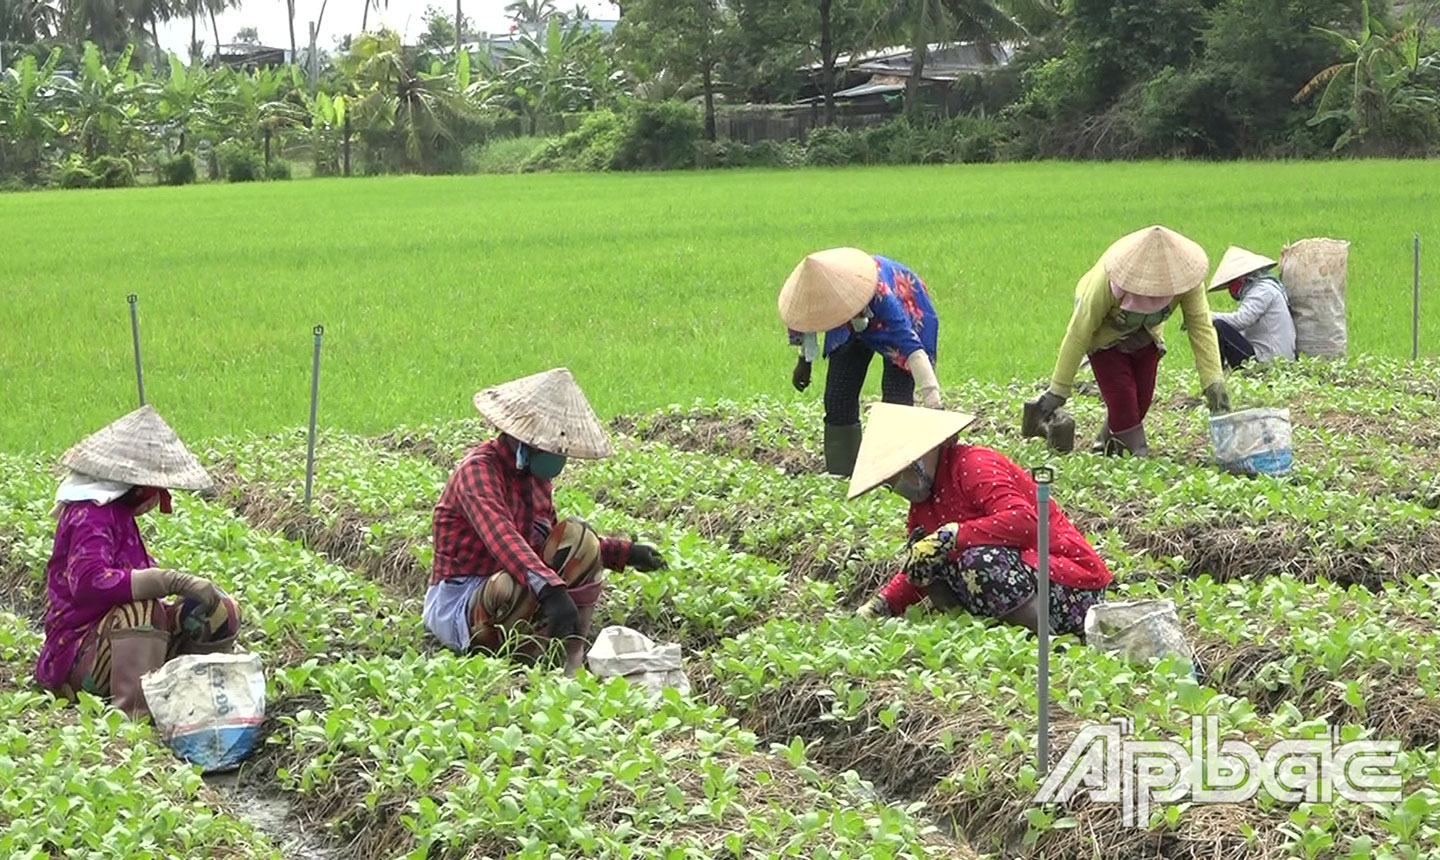 Nhiều nông dân trên địa bàn huyện nhờ chuyển đổi cơ cấu cây trồng đã nâng cao thu nhập,  ổn định cuộc sống.